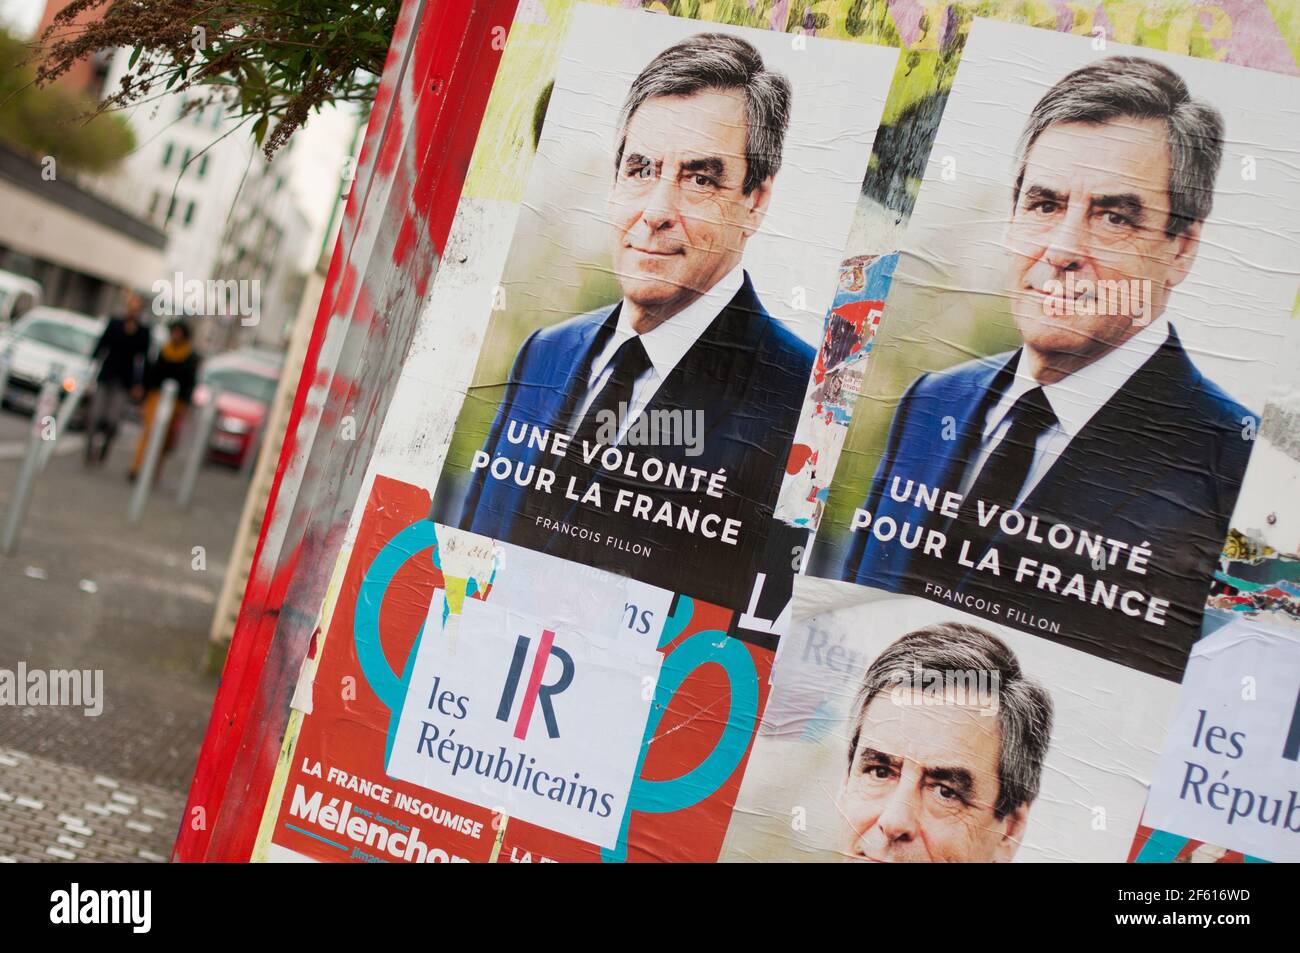 PARIGI, FRANCIA - 31 MARZO 2017 : manifesti della campagna di Francois Fillon per le elezioni presidenziali francesi del 2017. Foto Stock